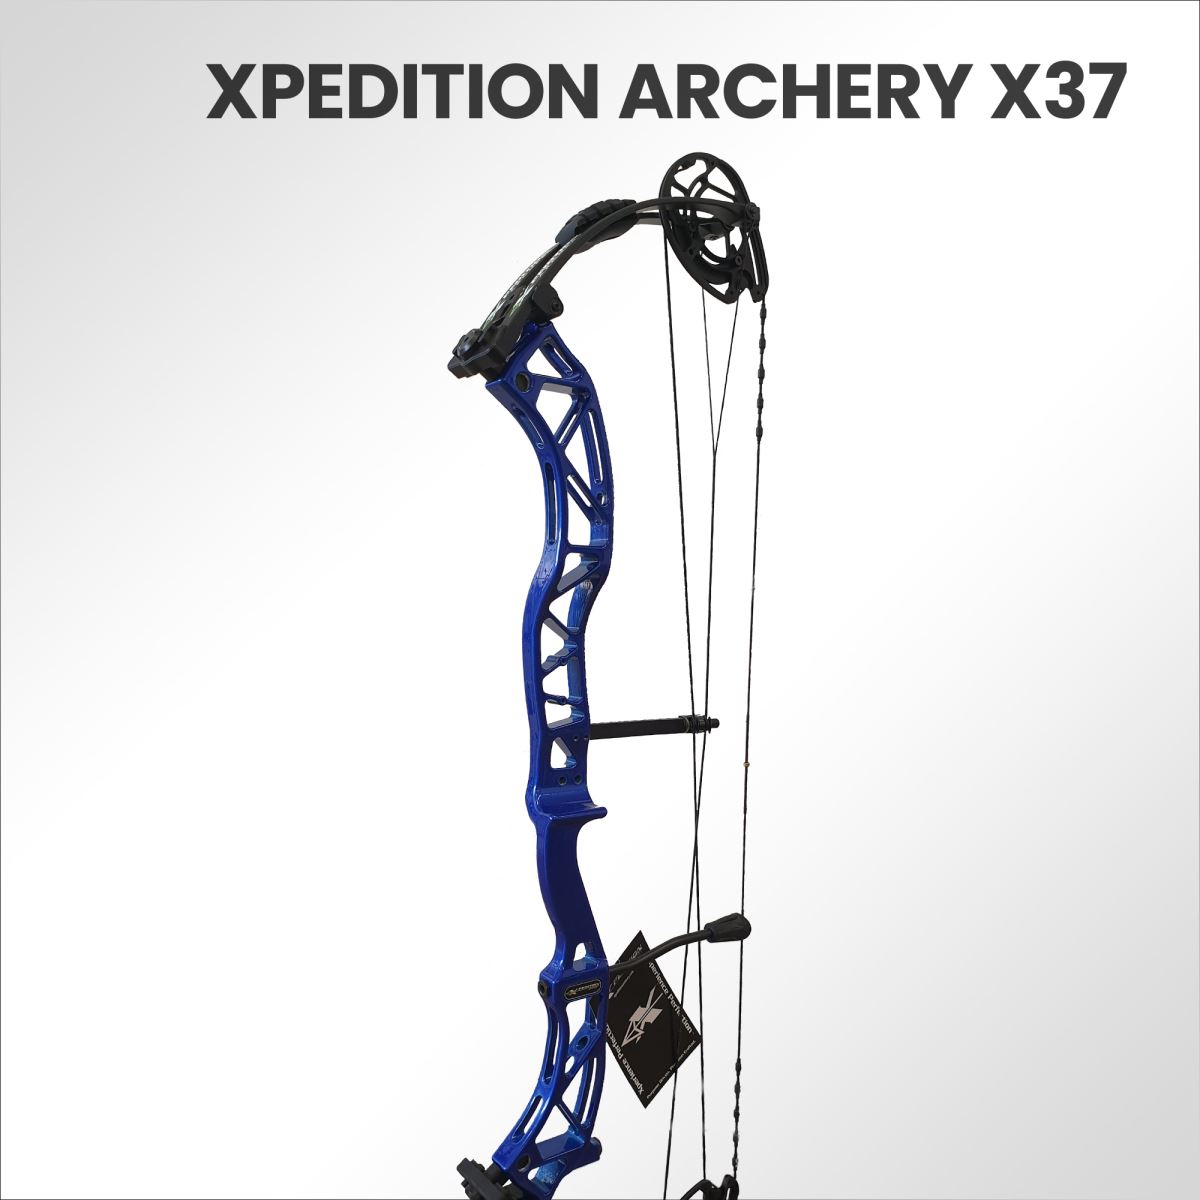 E' arrivato in anteprima Europea, il nuovo X37 Xpedition Archery. Scoprilo con noi!